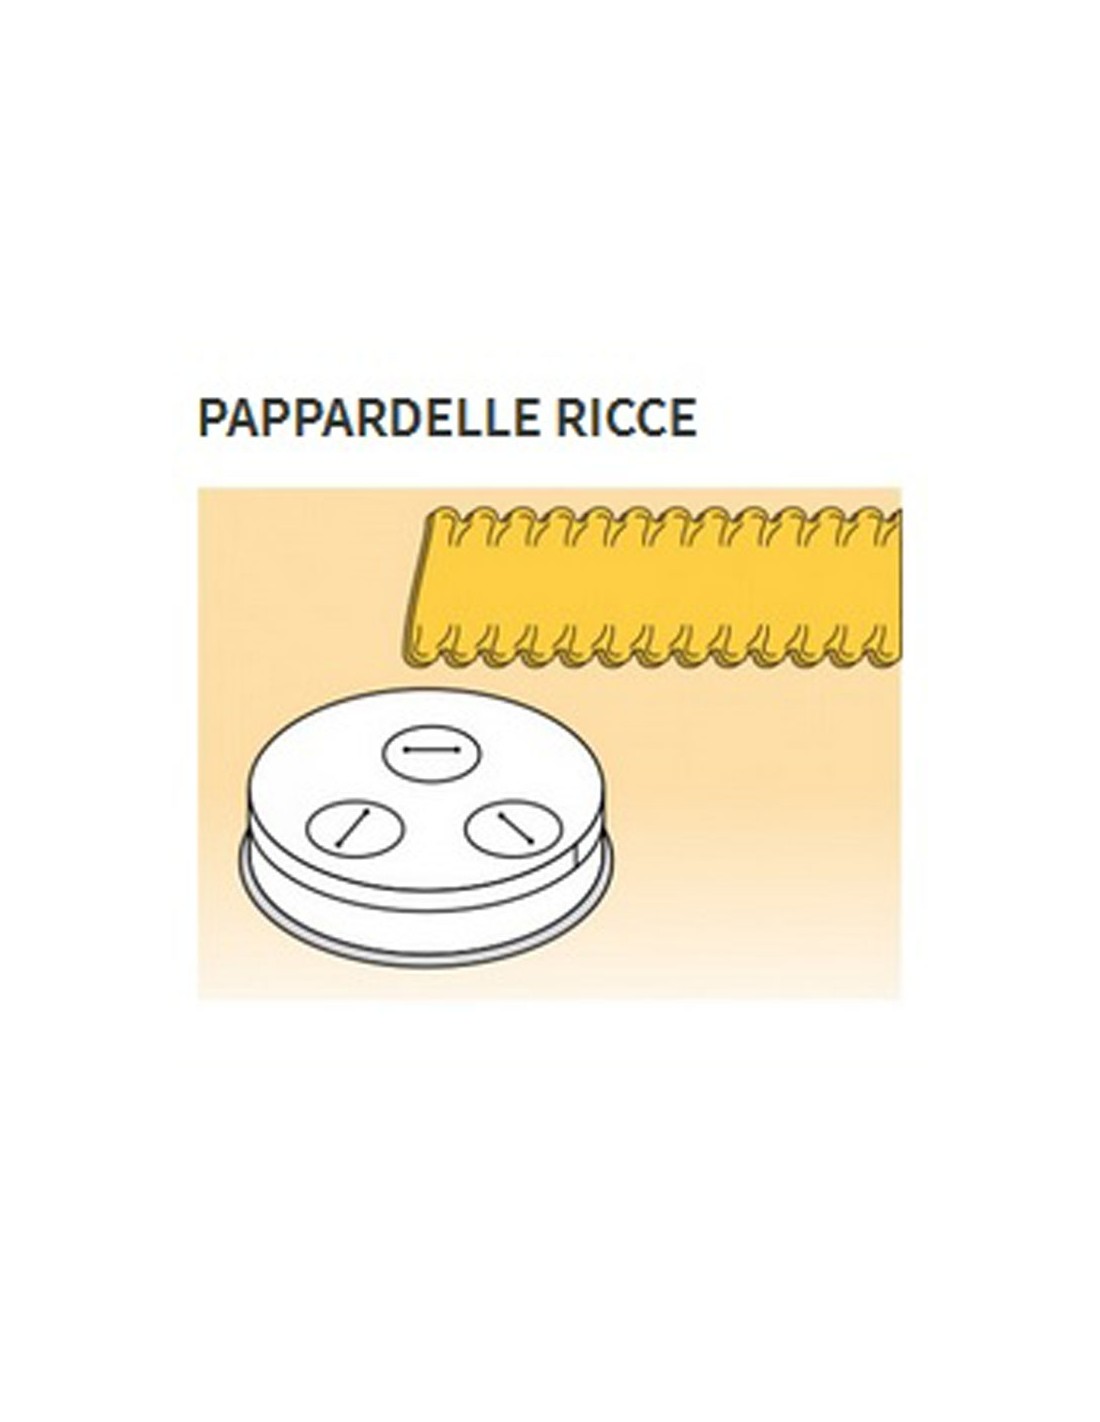 Trafile formati vari in lega ottone - Bronzo - Per macchina pasta fresca modello MPF8N - Pappardelle ricce mm 16